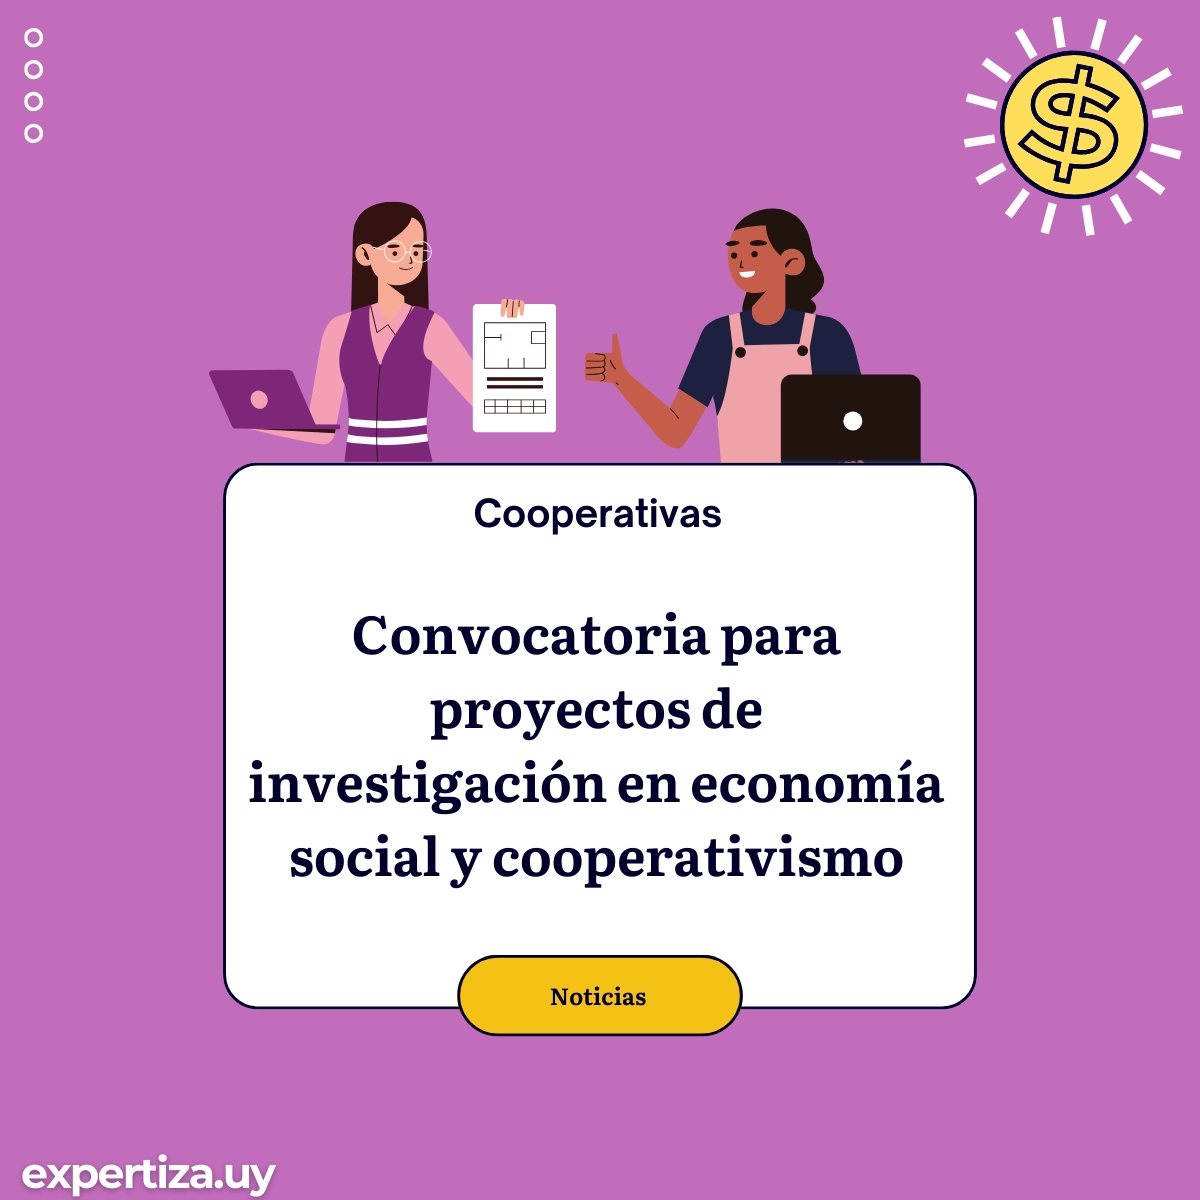 Convocatoria para proyectos de investigación en economía social y cooperativismo.